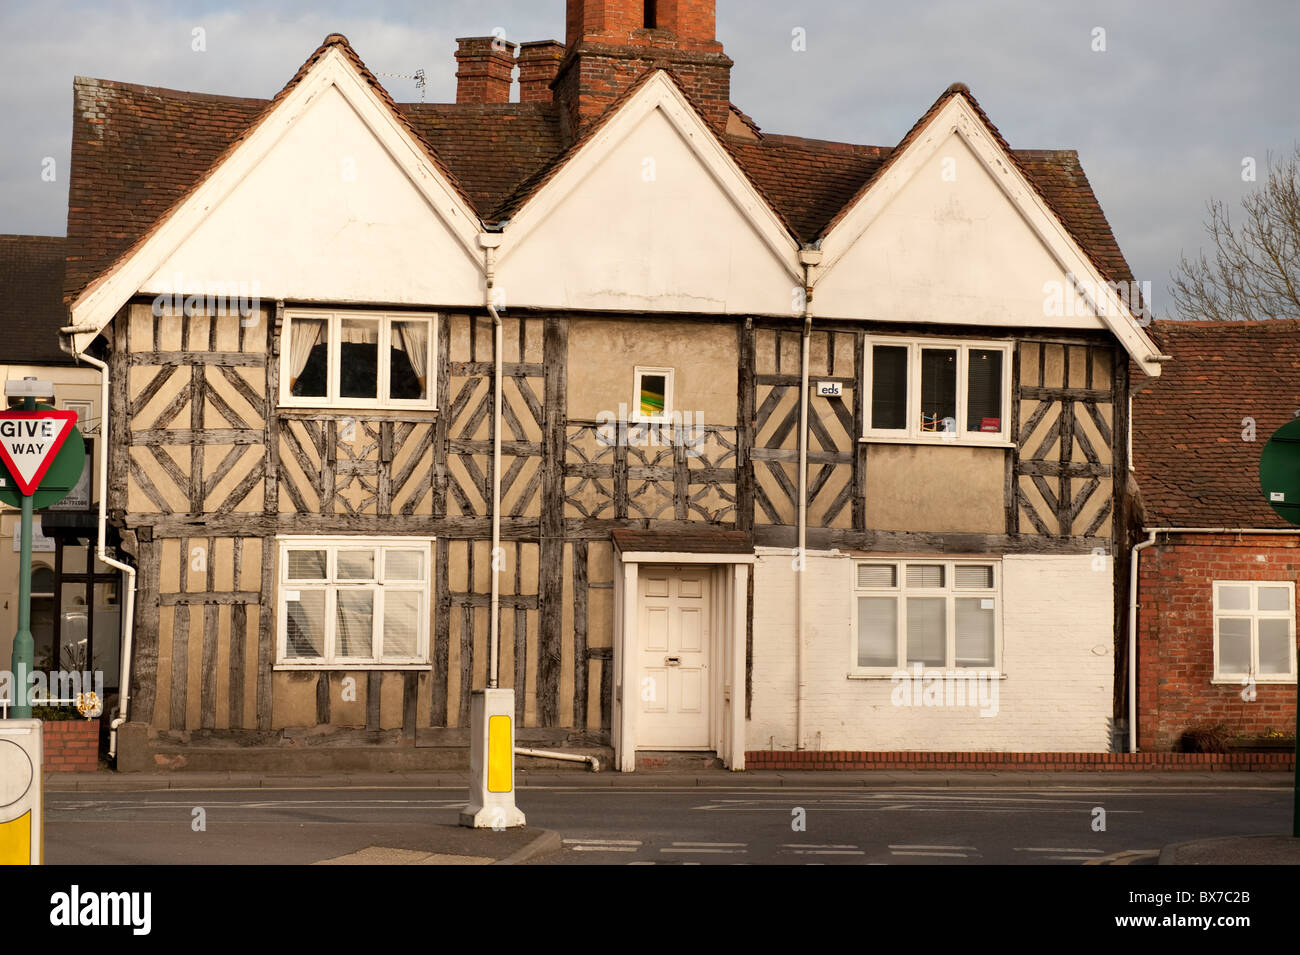 Vieux bâtiment tudor Knowle UK Banque D'Images